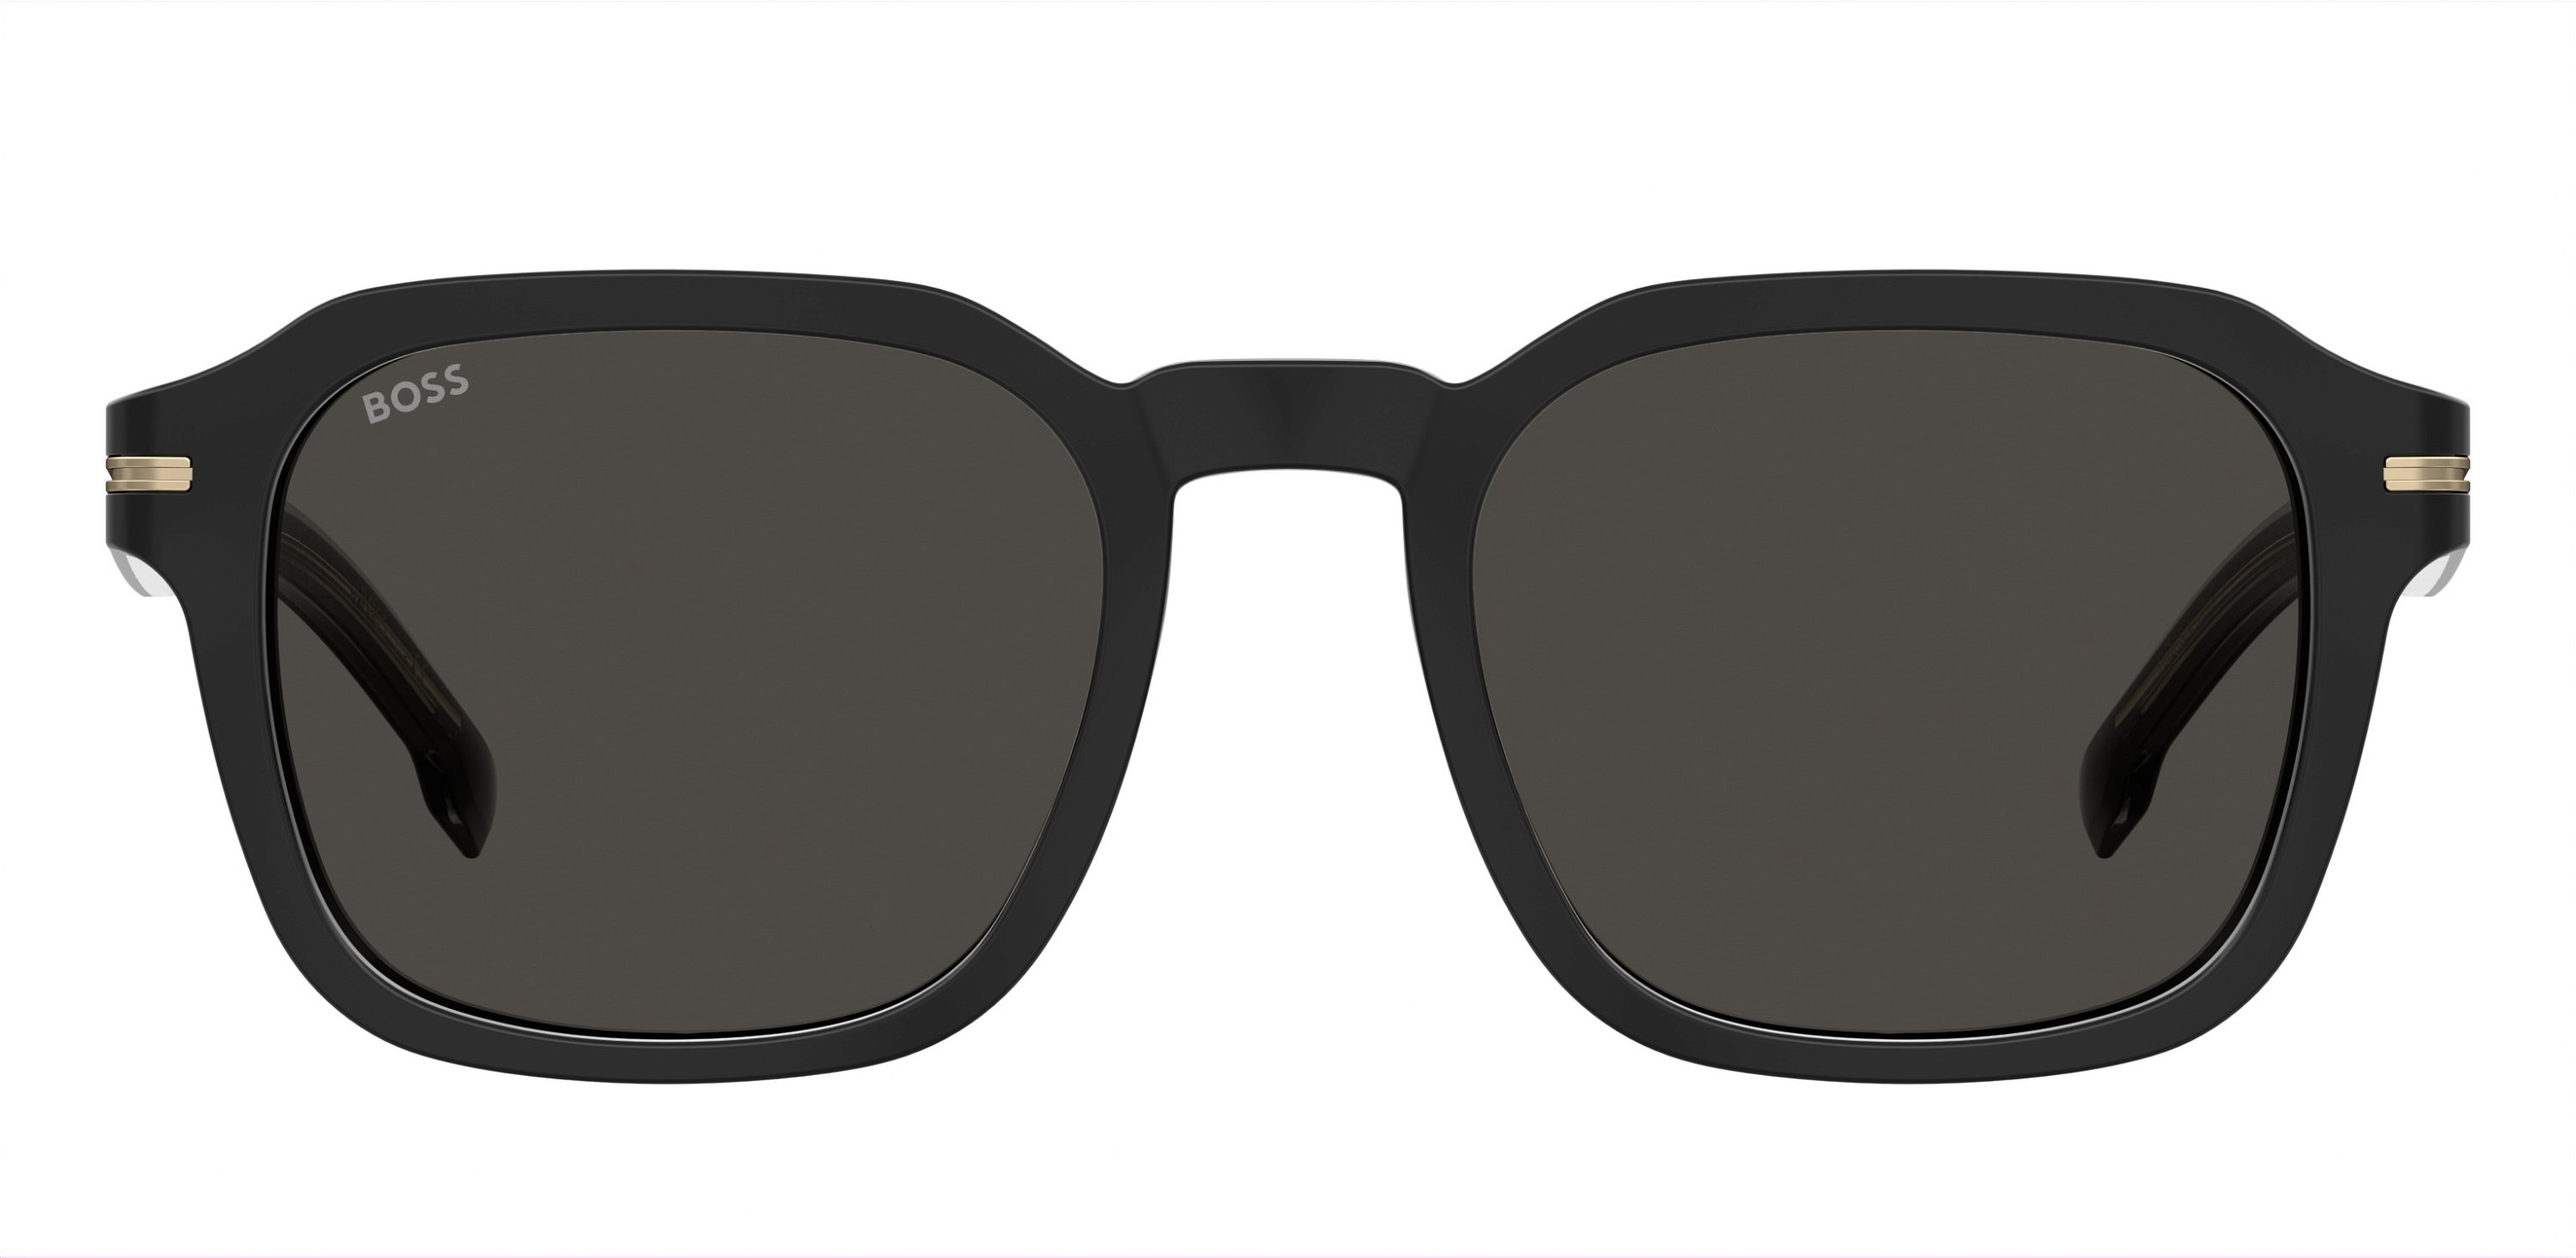 Das Bild zeigt die Sonnenbrille BOSS1627S 807 von der Marke BOSS in Schwarz.